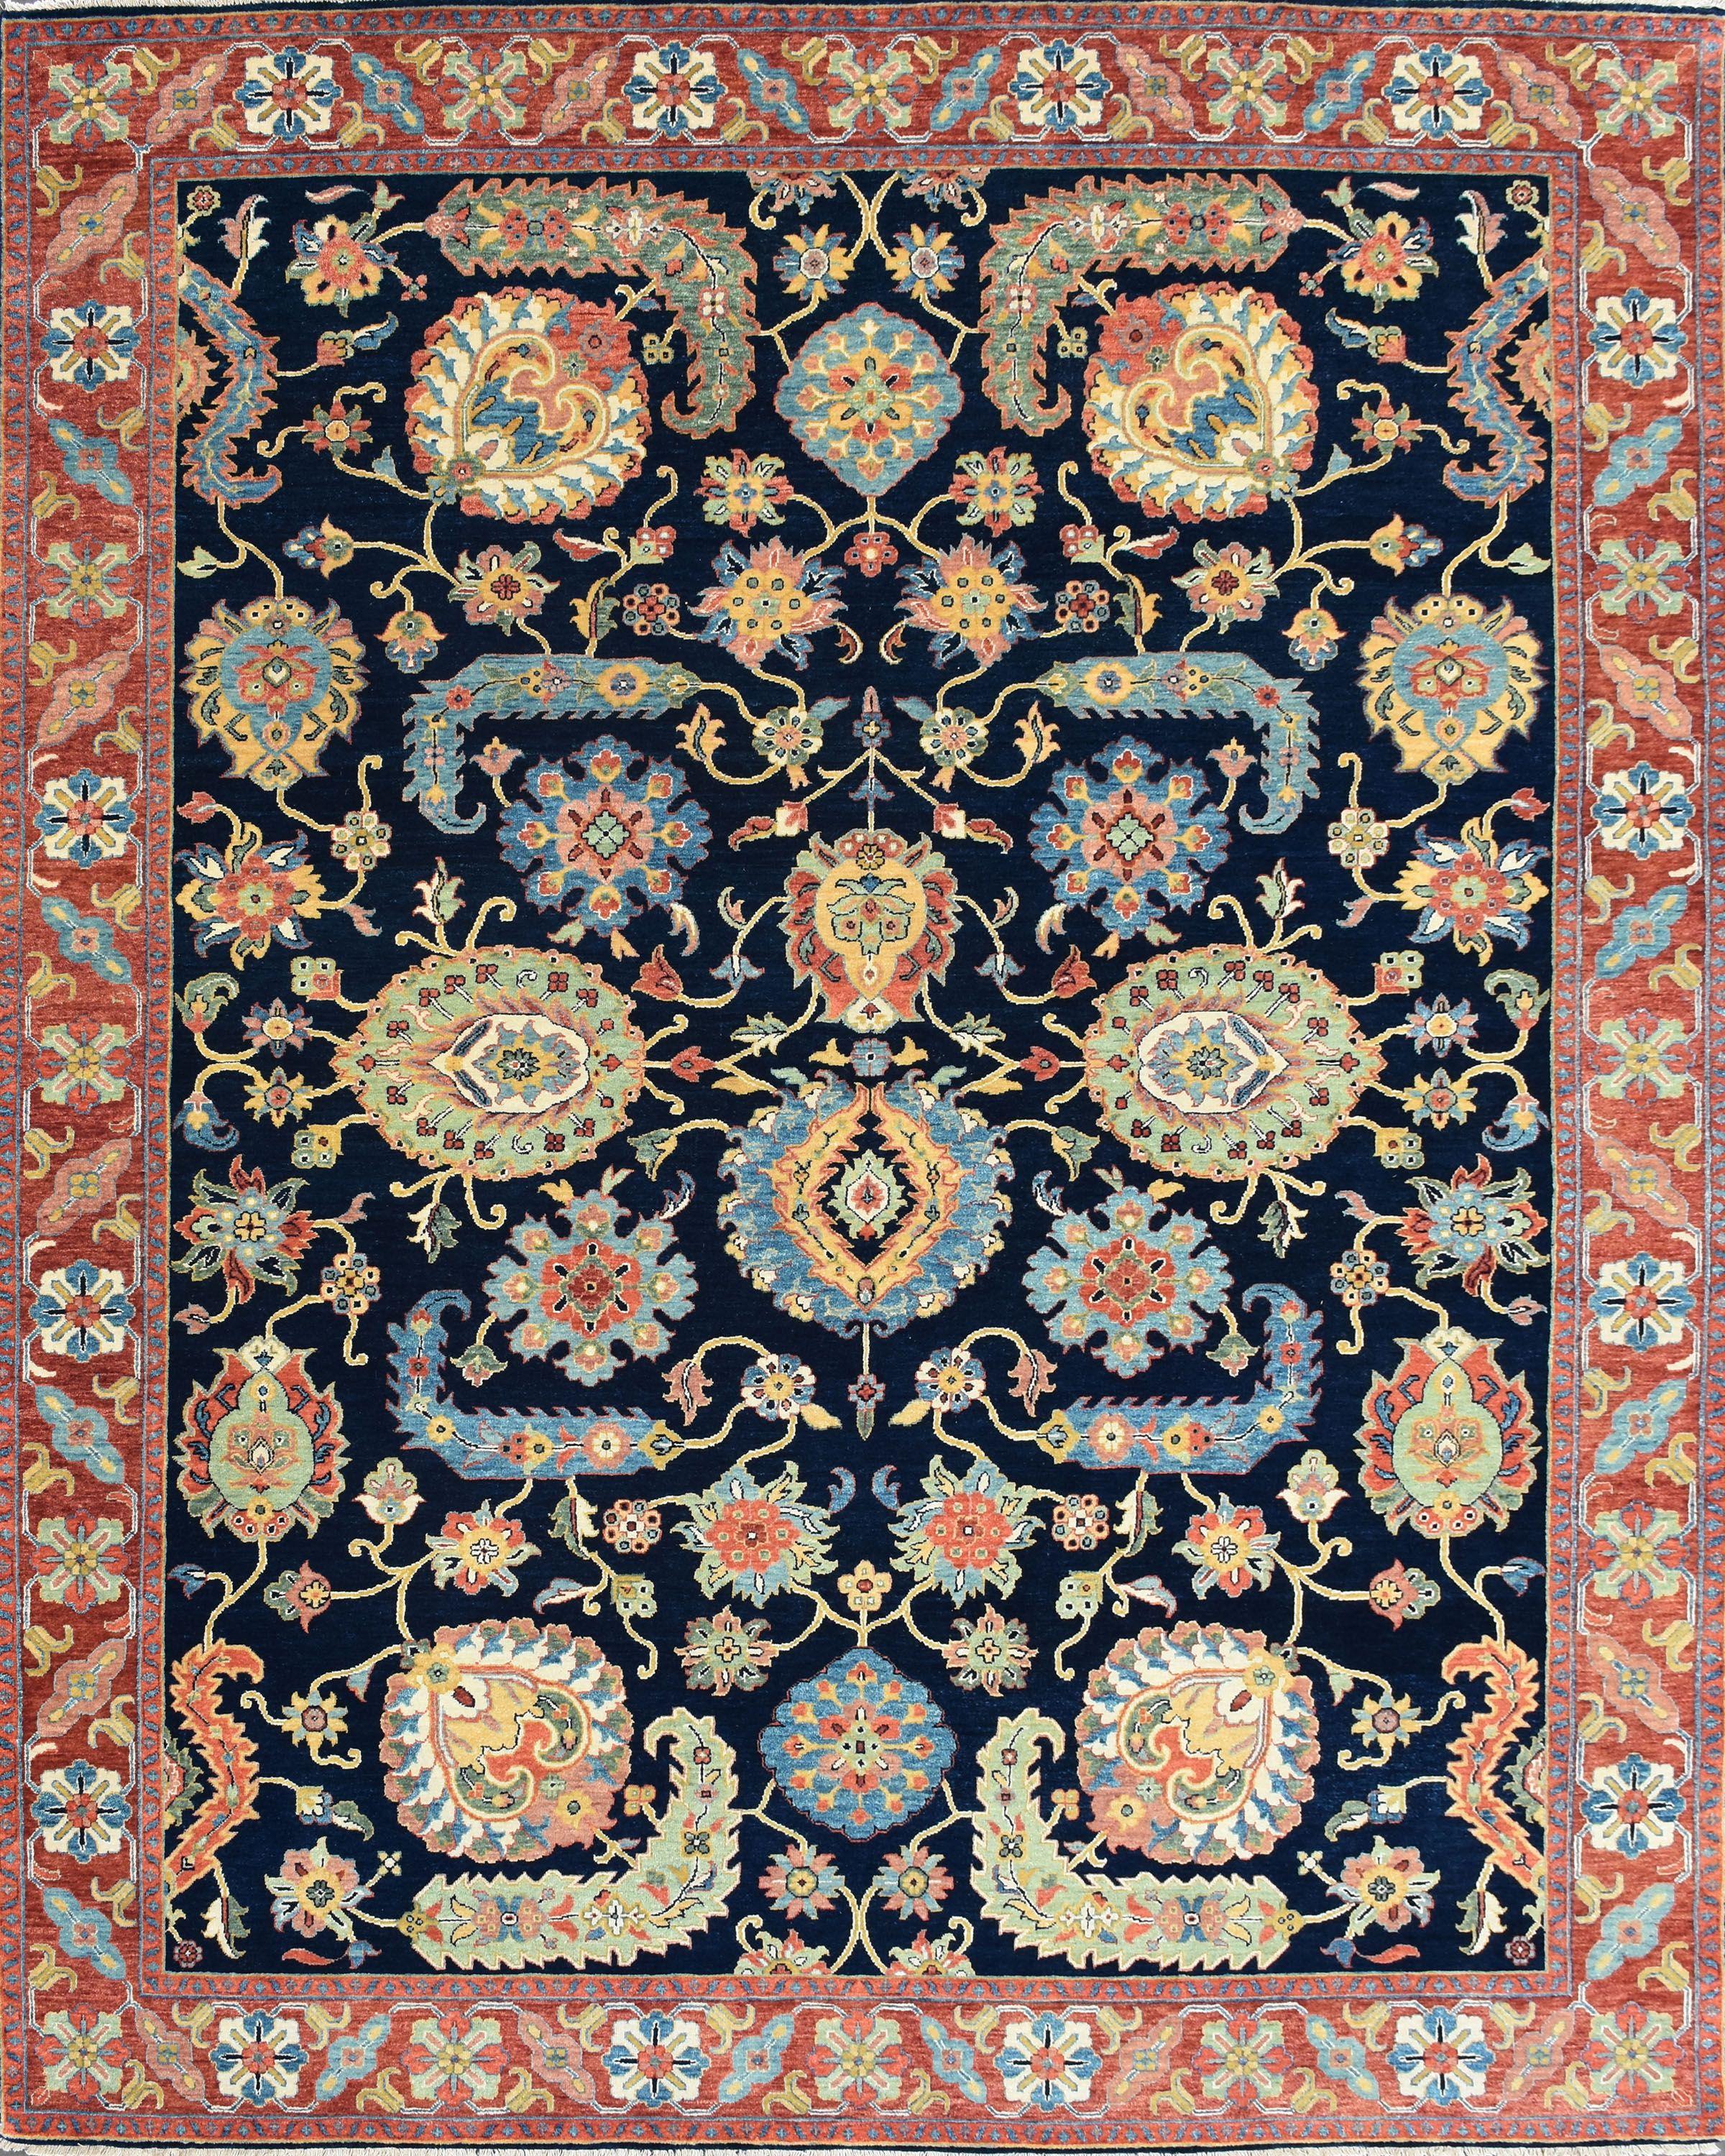 Joli tapis neuf avec un beau design persan et de belles couleurs, entièrement noué à la main avec de la laine et du velours de soie sur une base de coton.